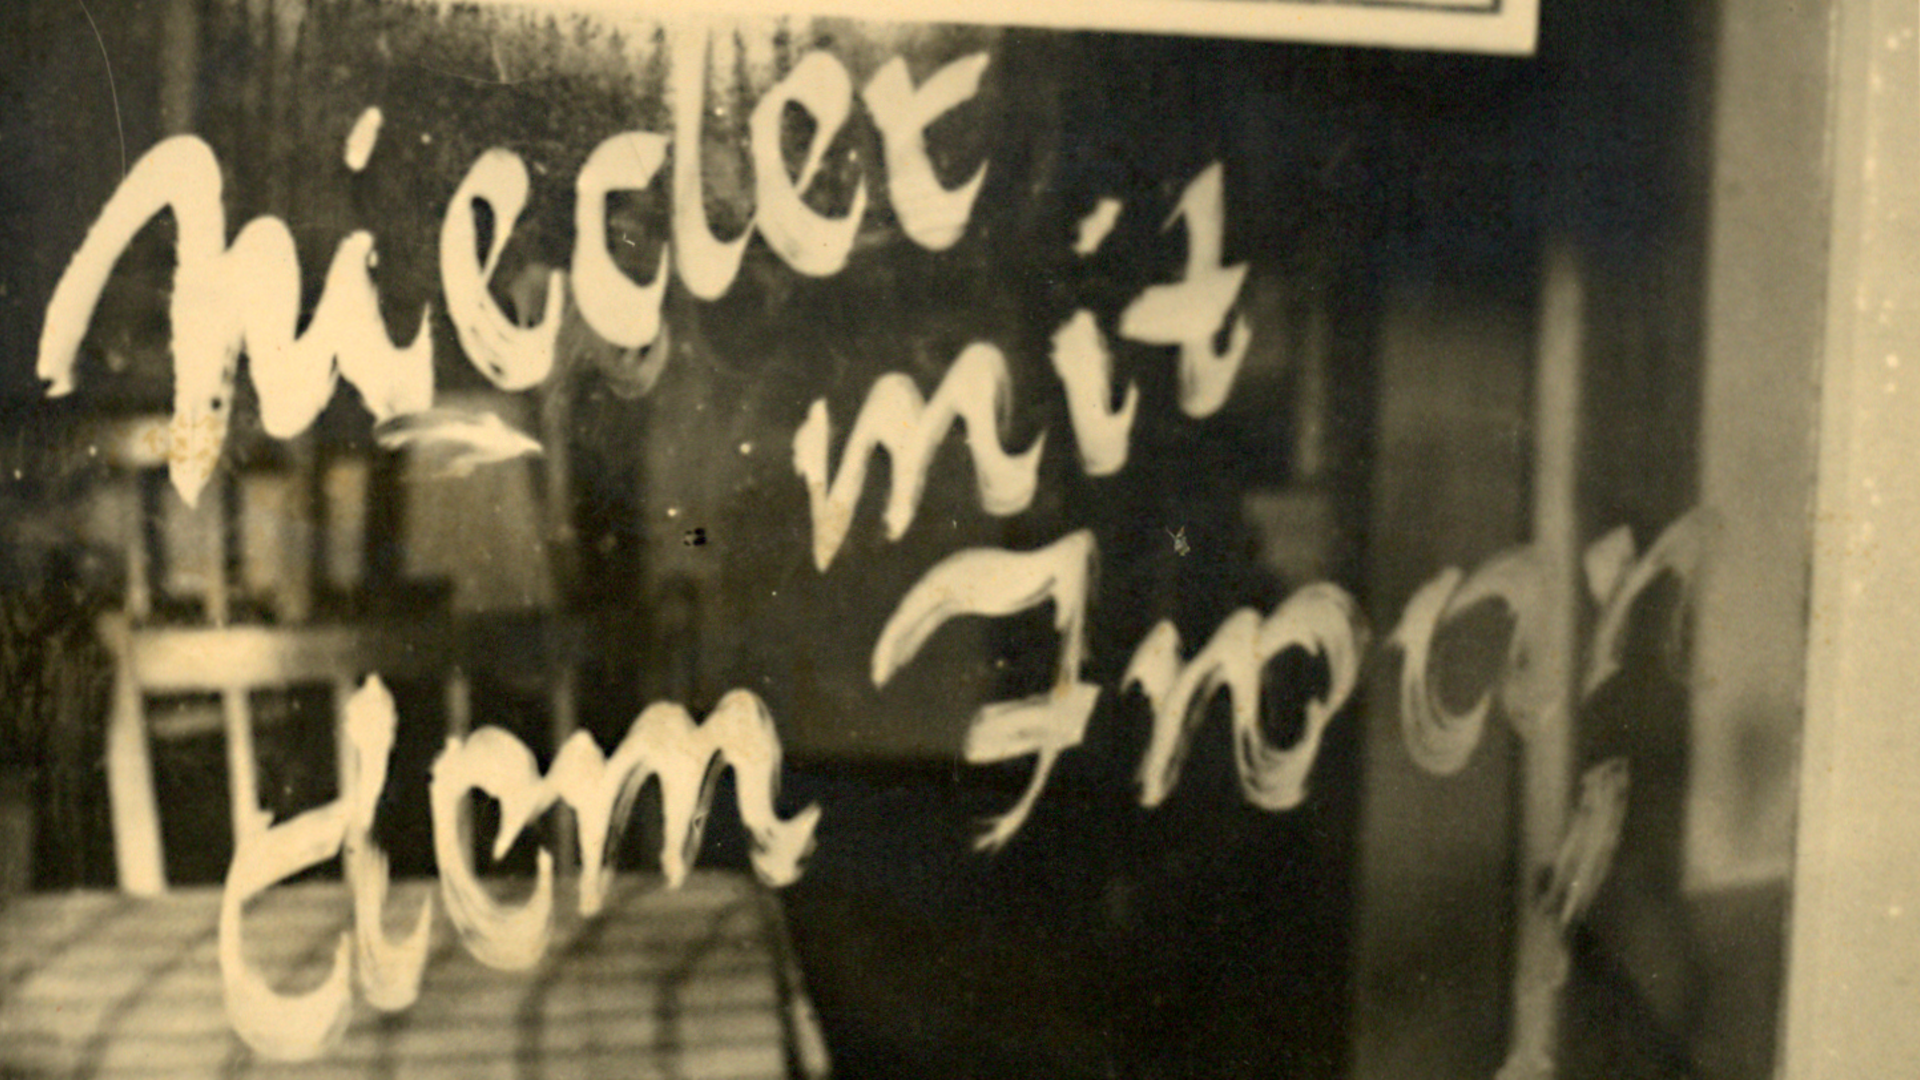 Eine Losung mit dem Schriftzug "Nieder mit dem Iwan" auf einer in der Tür verbauten Fensterscheibe.